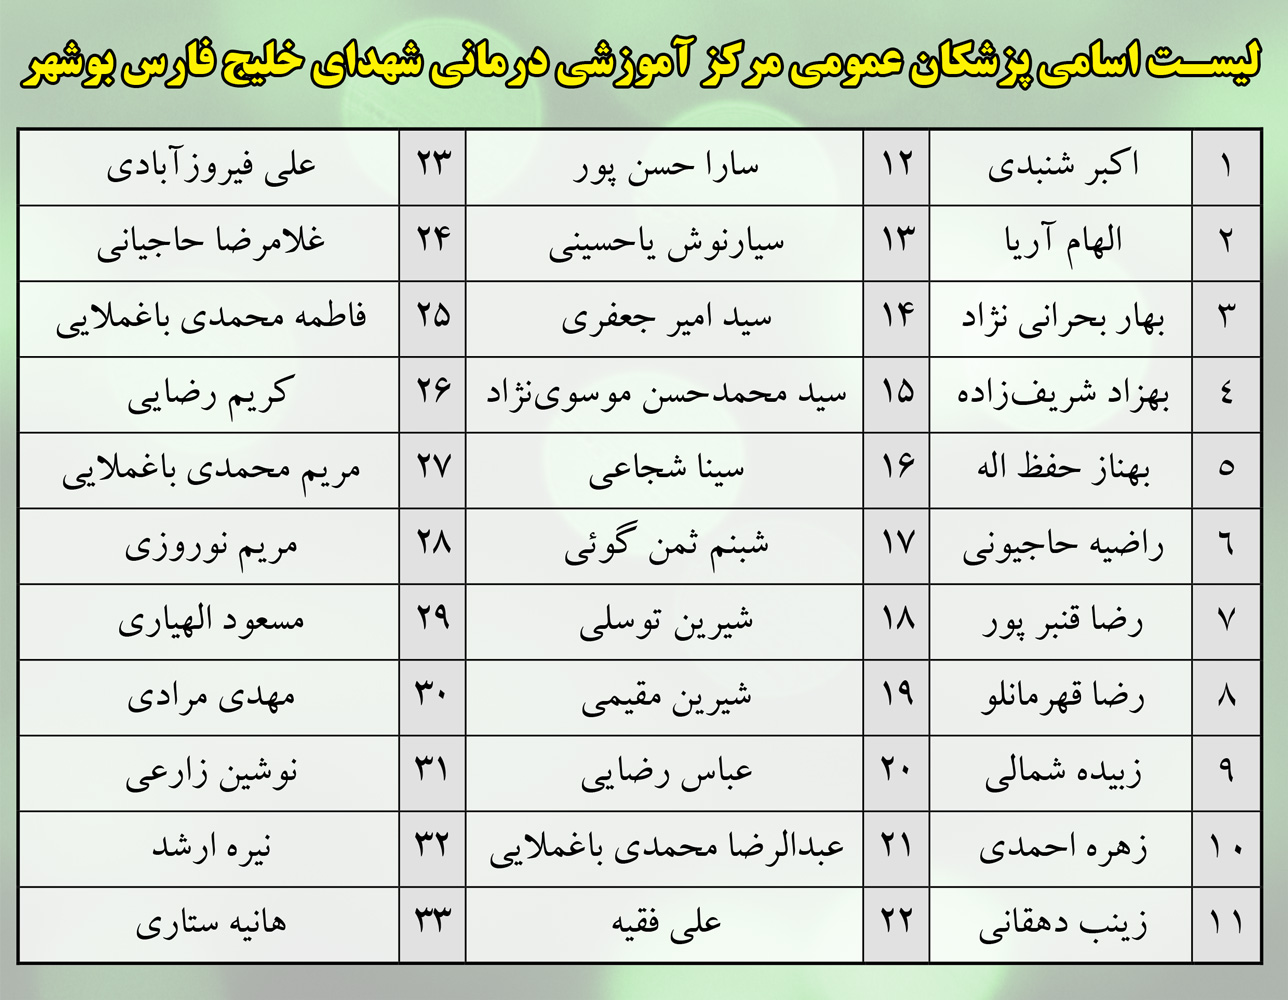 لیست پزشکان استان بوشهر
